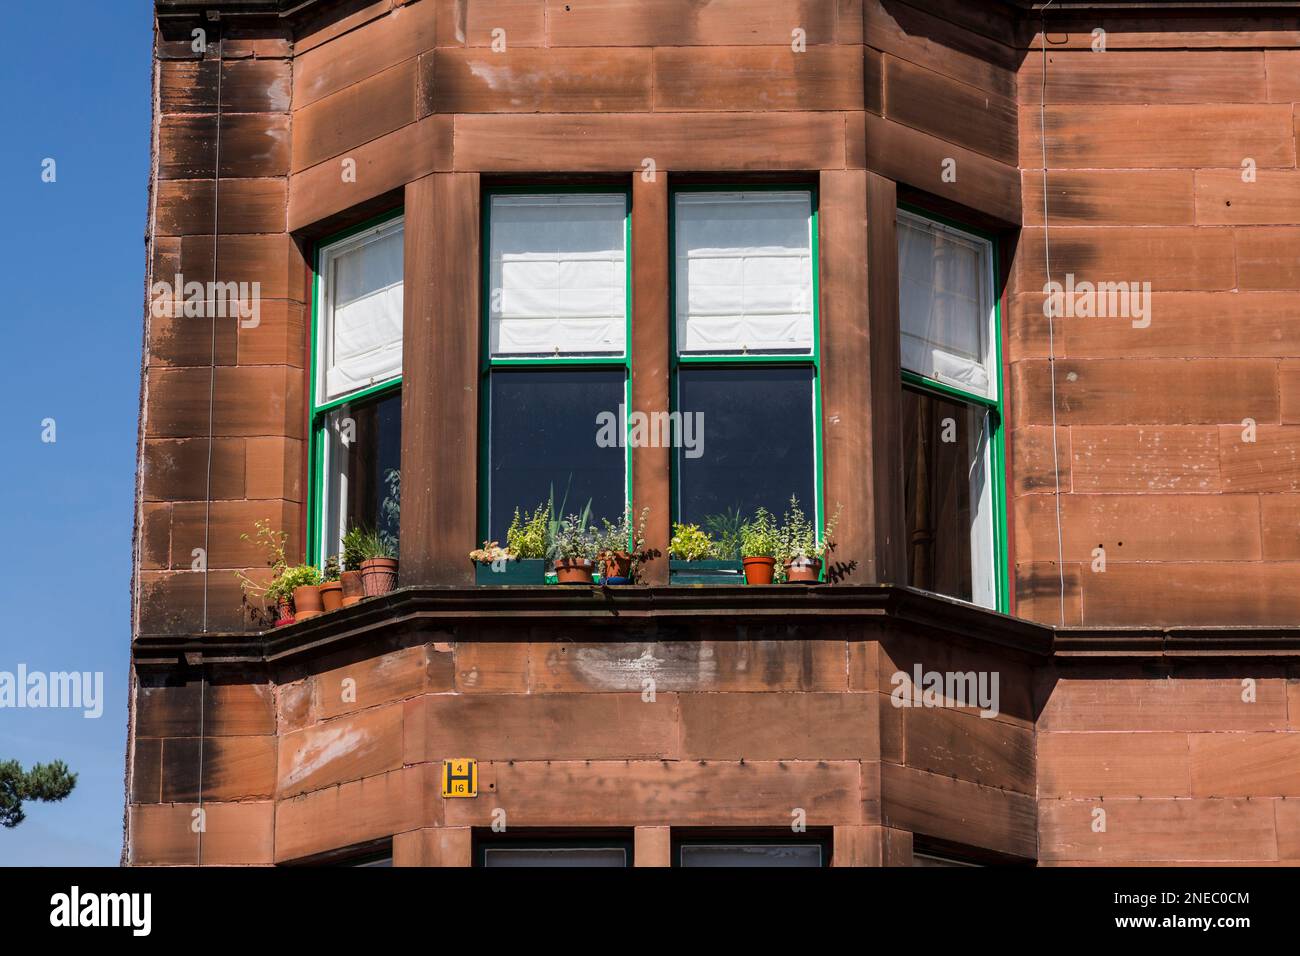 Vasi della pianta sul davanzale della finestra di un edificio dell'inquilino in estate, Glasgow, Scozia, Regno Unito, Europa Foto Stock